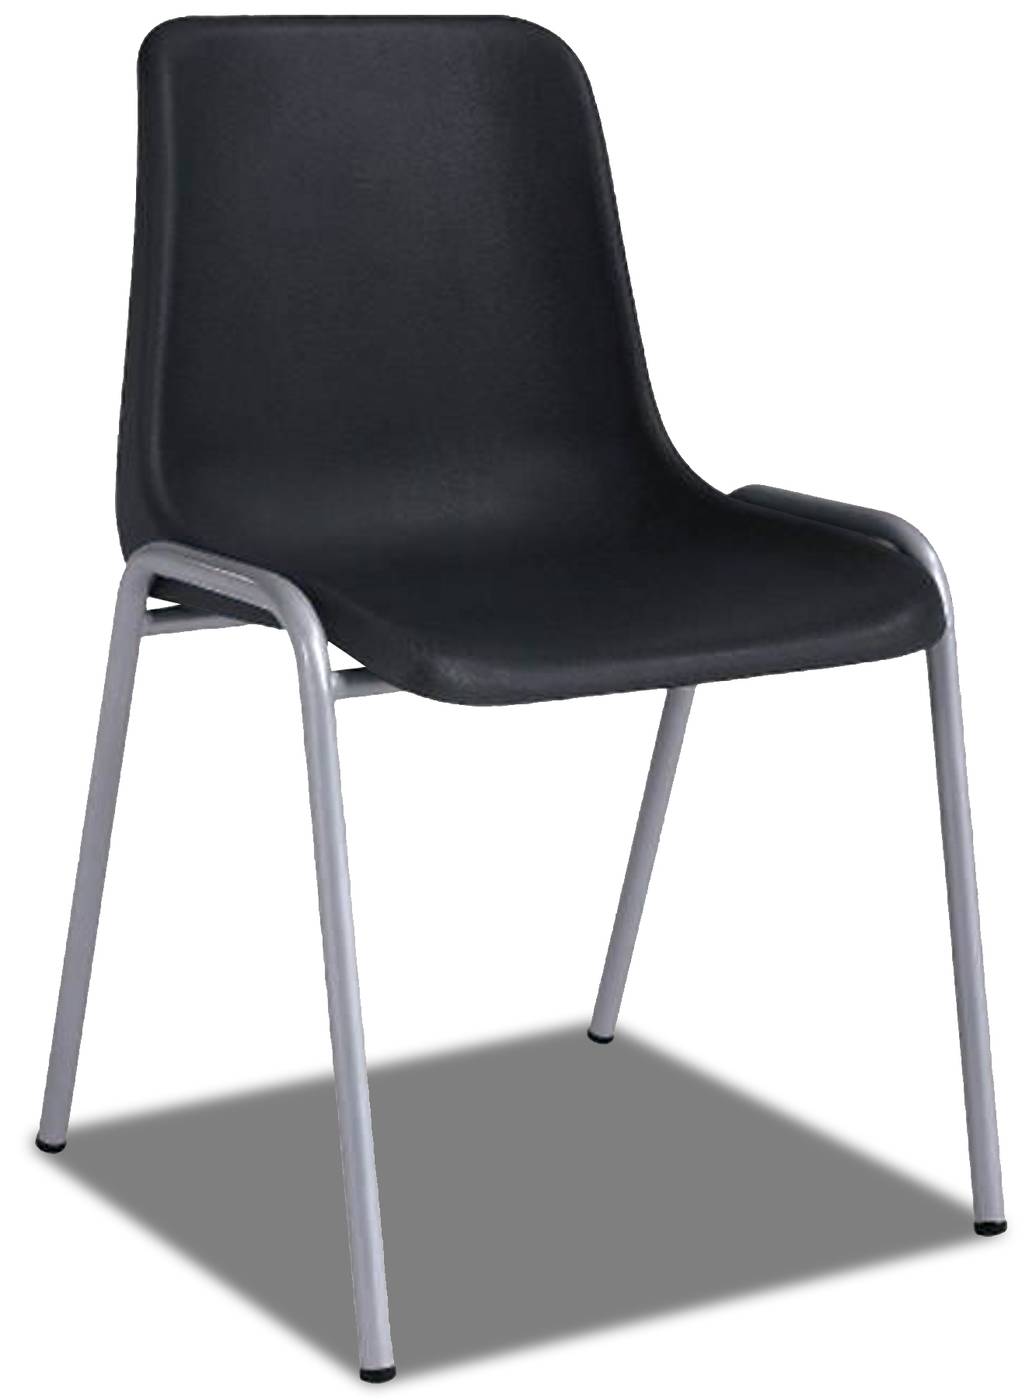 Silla de oficina apilable, con asiento y respaldo en color negro